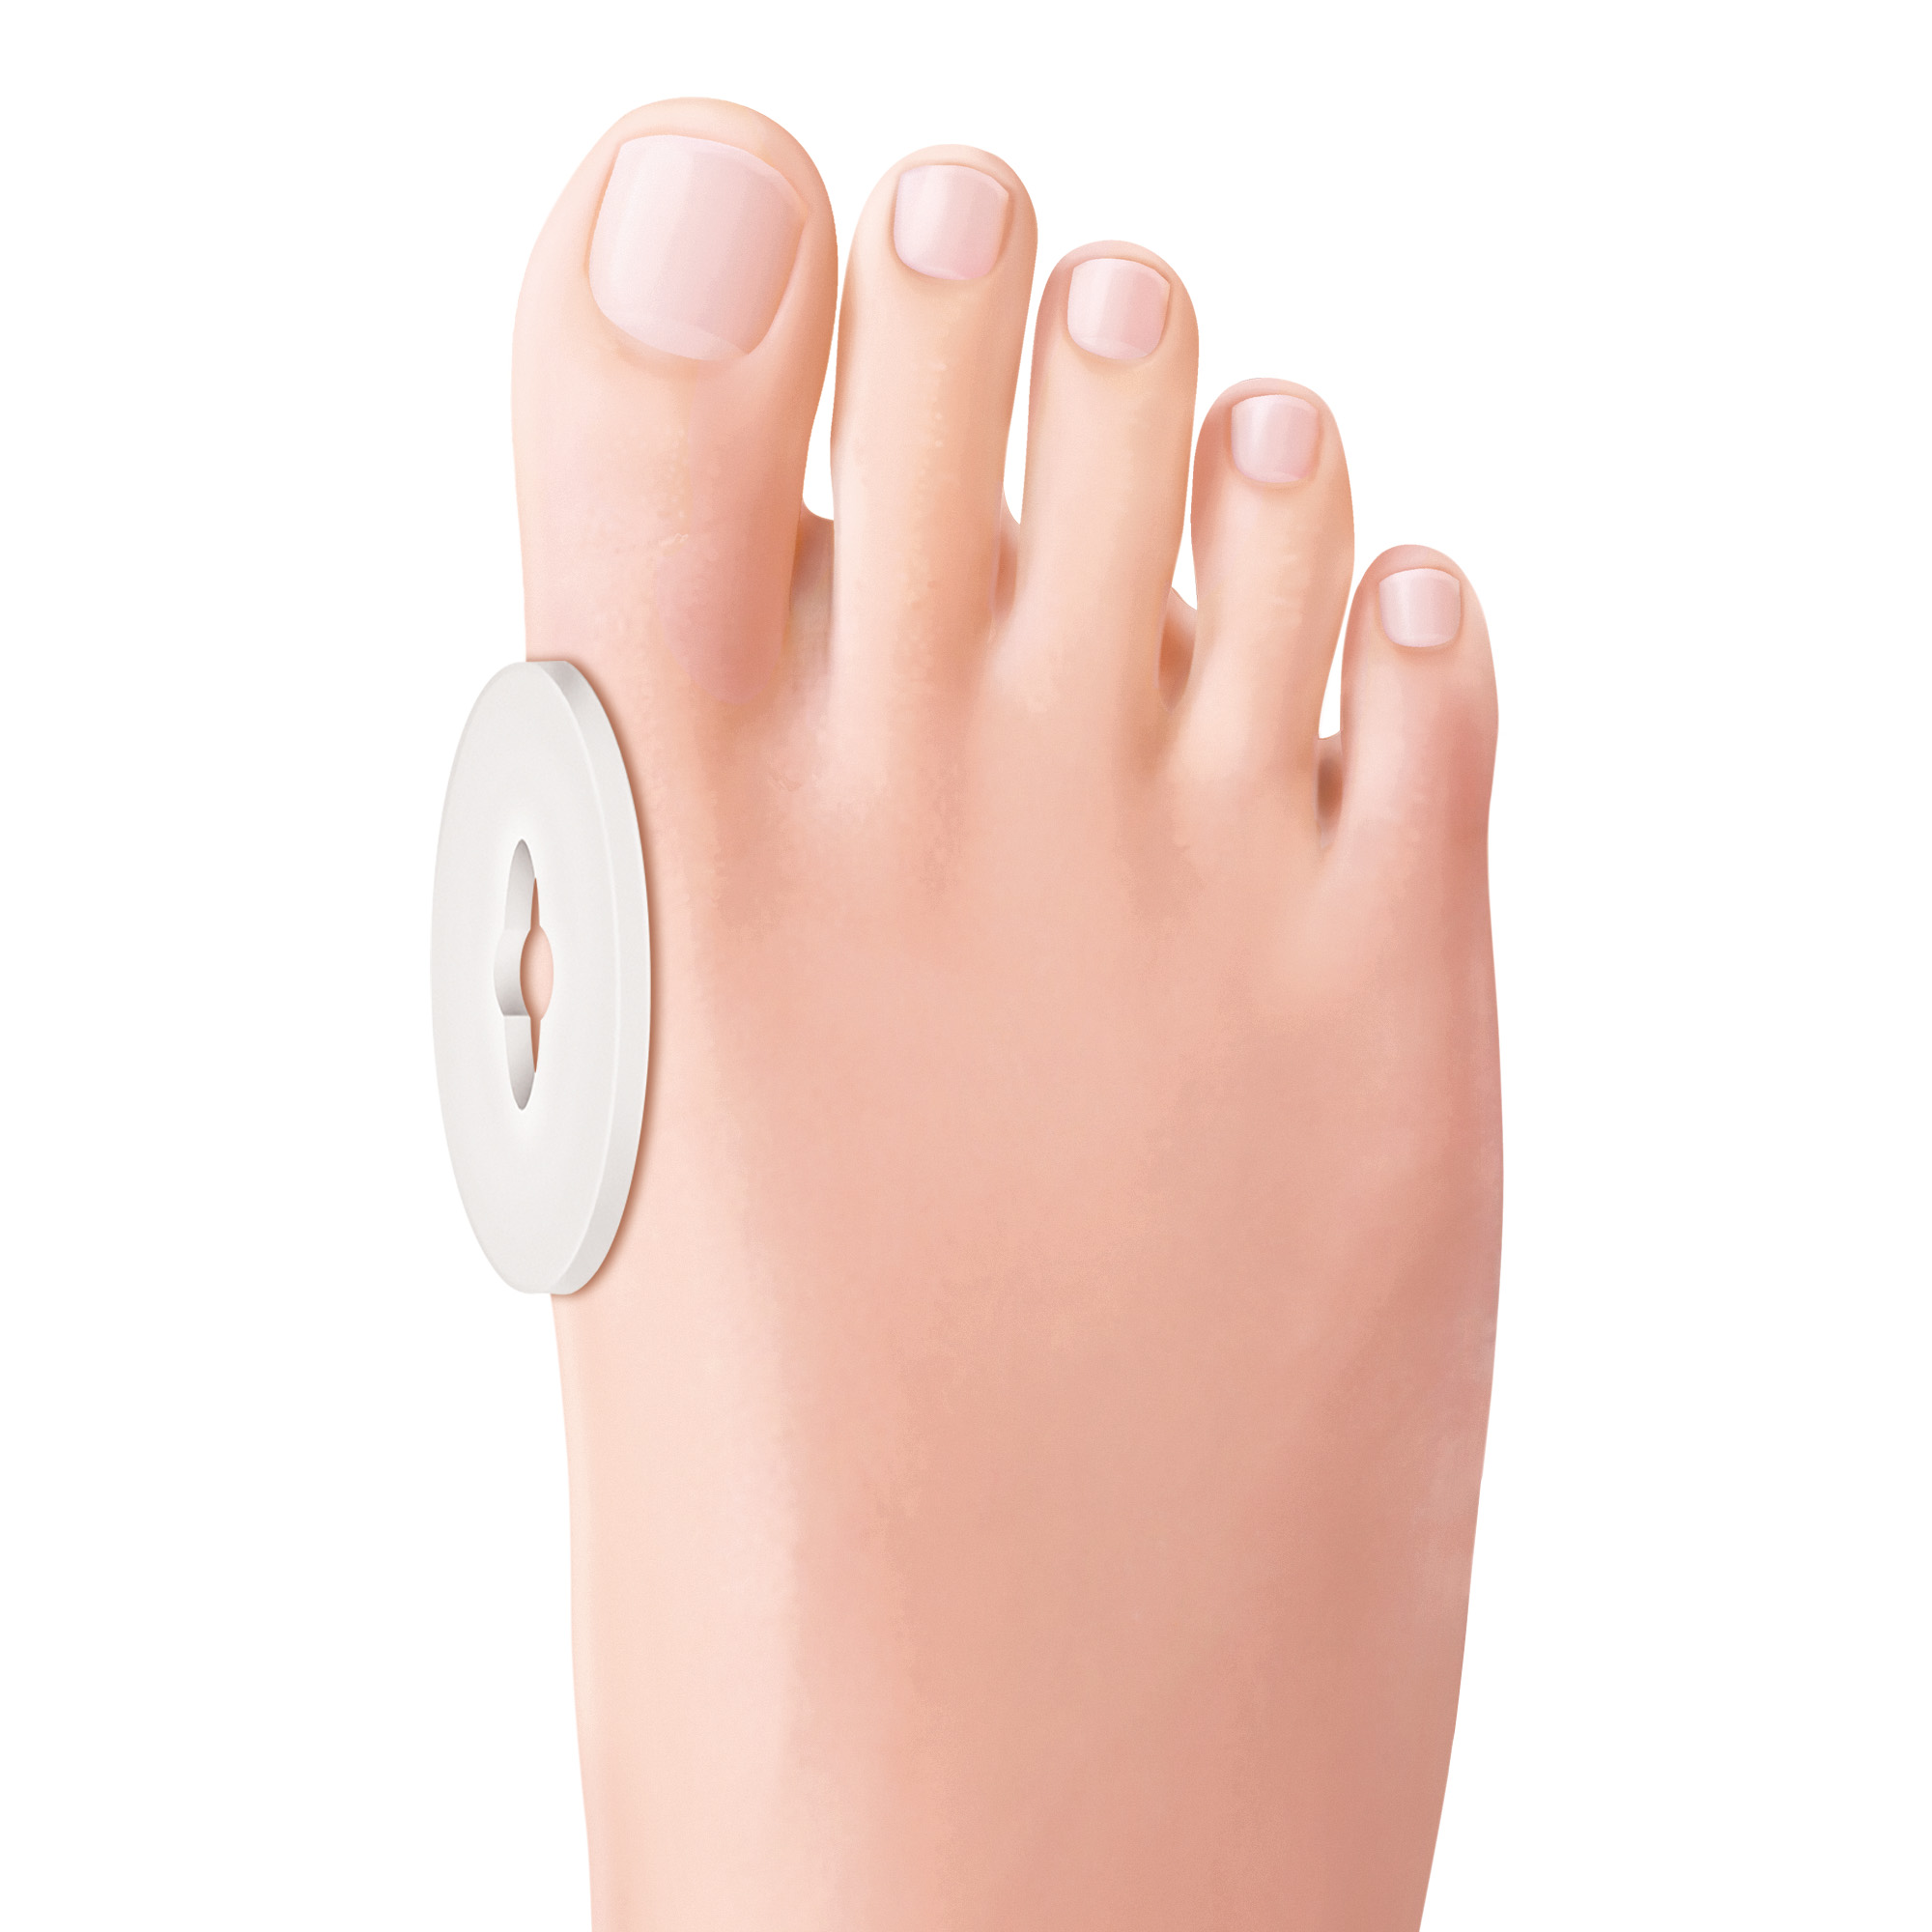 Protections ovales larges auto-adhésives pour les pieds en Gel Polymère Tecniwork transparent 2 pcs